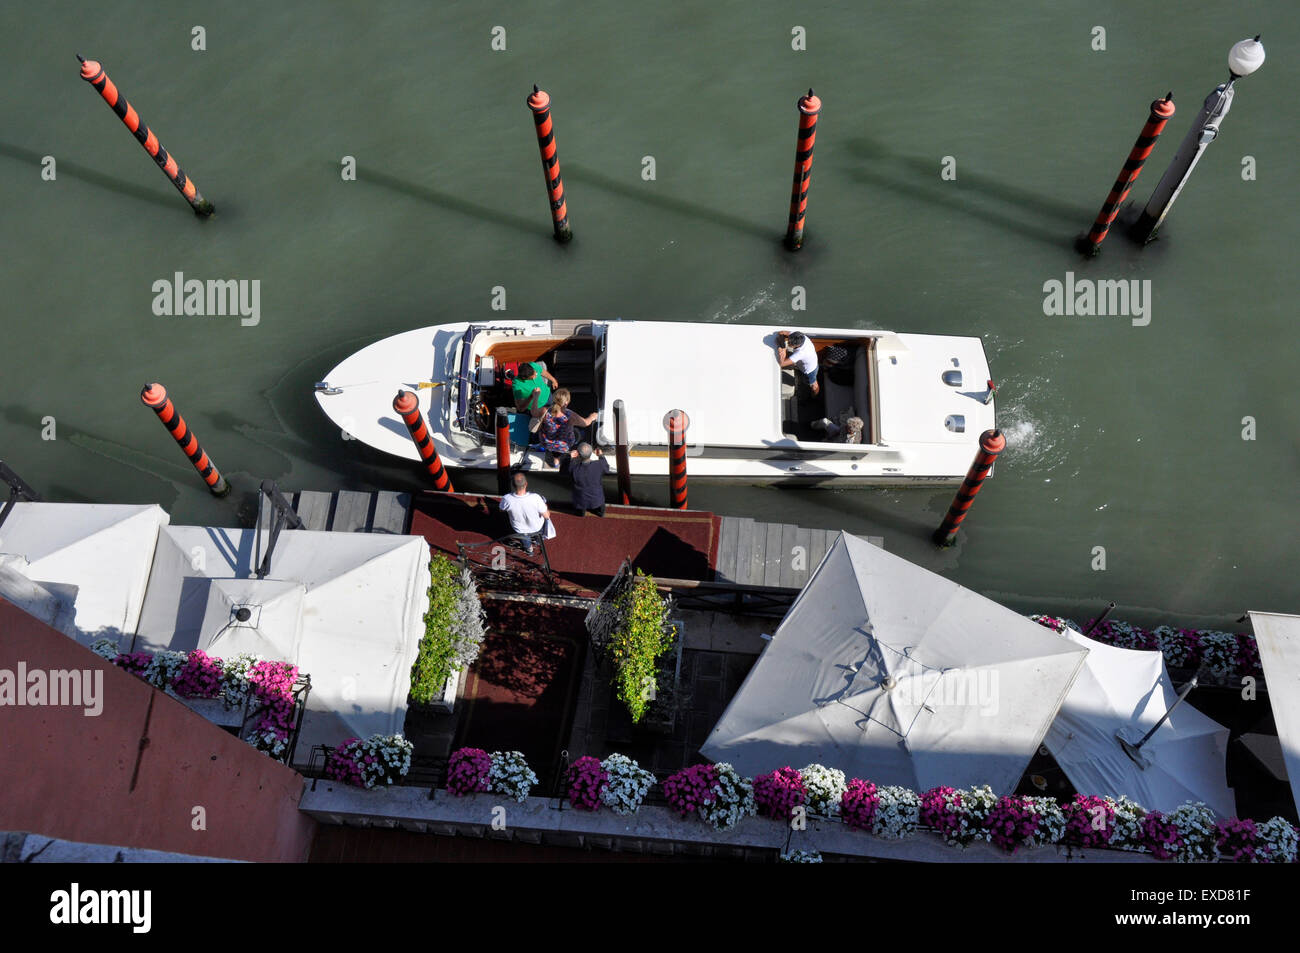 Italie - Venise - Cannaregio région - Canale Grande - Hotel landing stage - une arrivée en bateau-taxi - graphique - d'en haut Banque D'Images